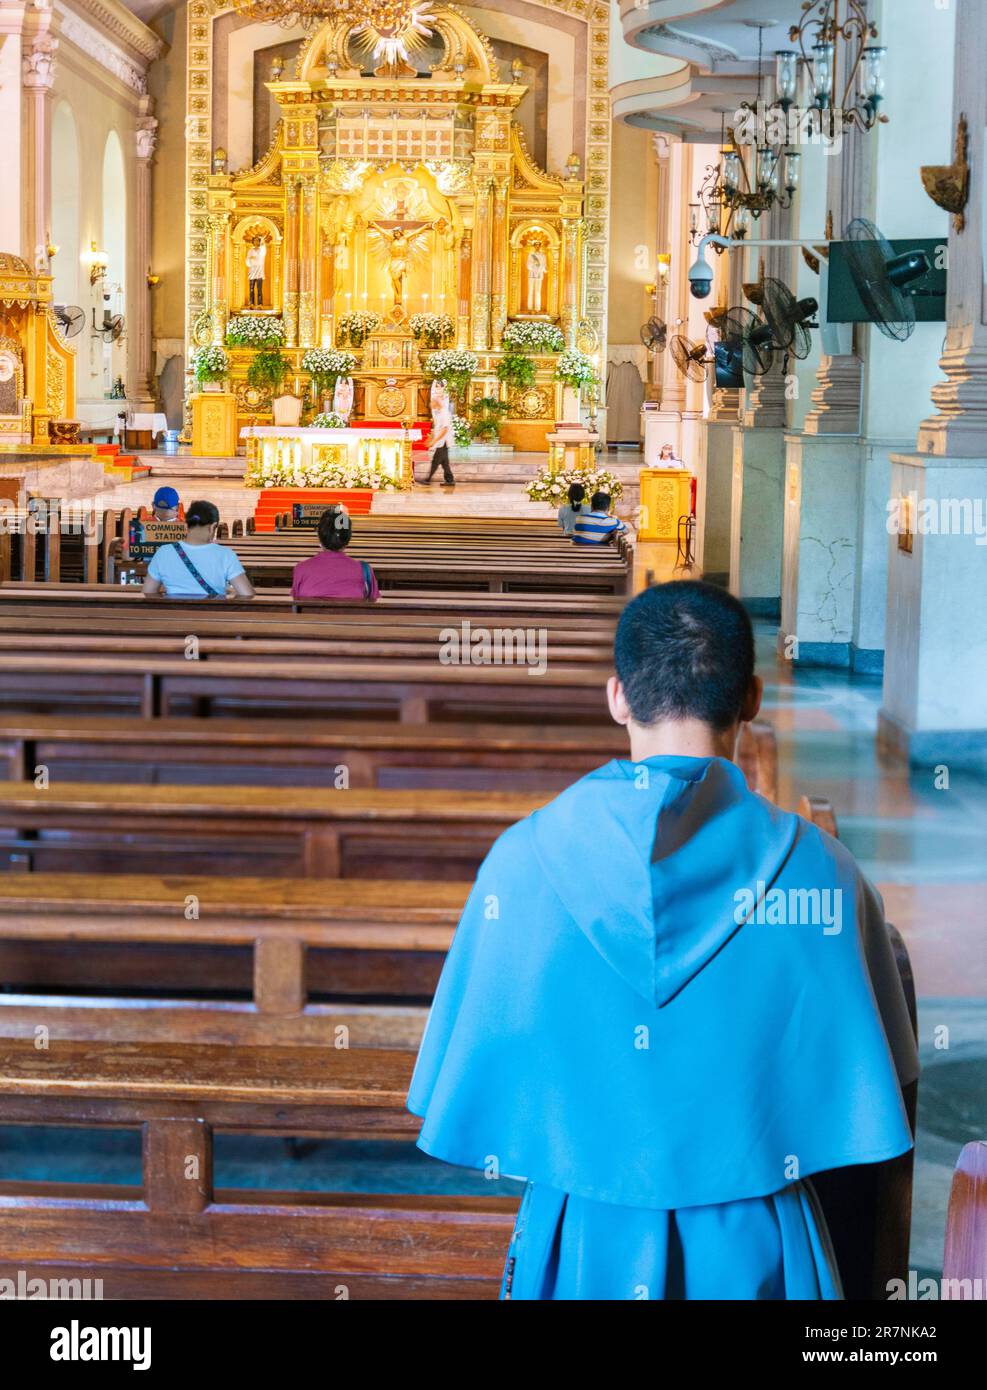 Cebu ville,Cebu,Philippines-17 janvier 2023:au cours de la journée,les fidèles catholiques philippins visitant la cathédrale,viennent et vont,sur une base régulière,pour prier,moi Banque D'Images